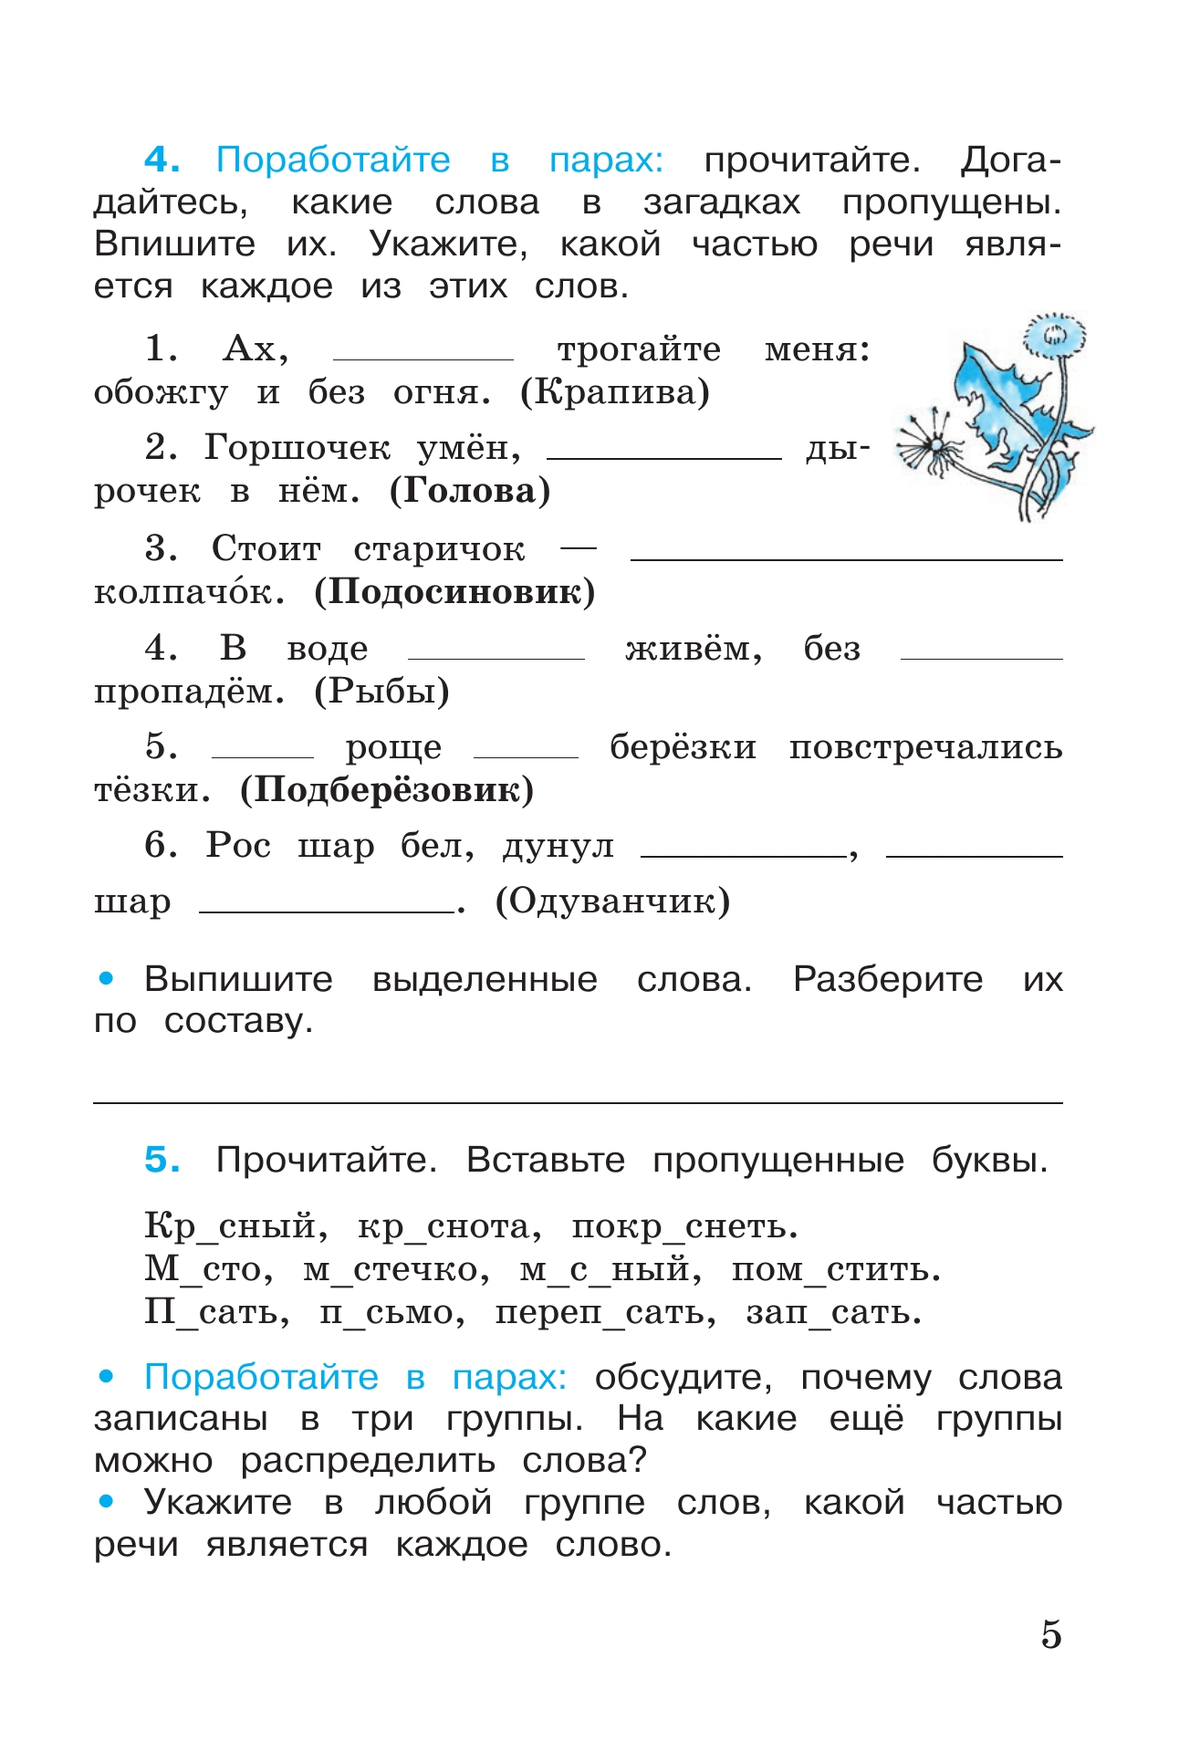 Русский язык. Рабочая тетрадь. 3 класс. В 2 частях. Часть 2 2